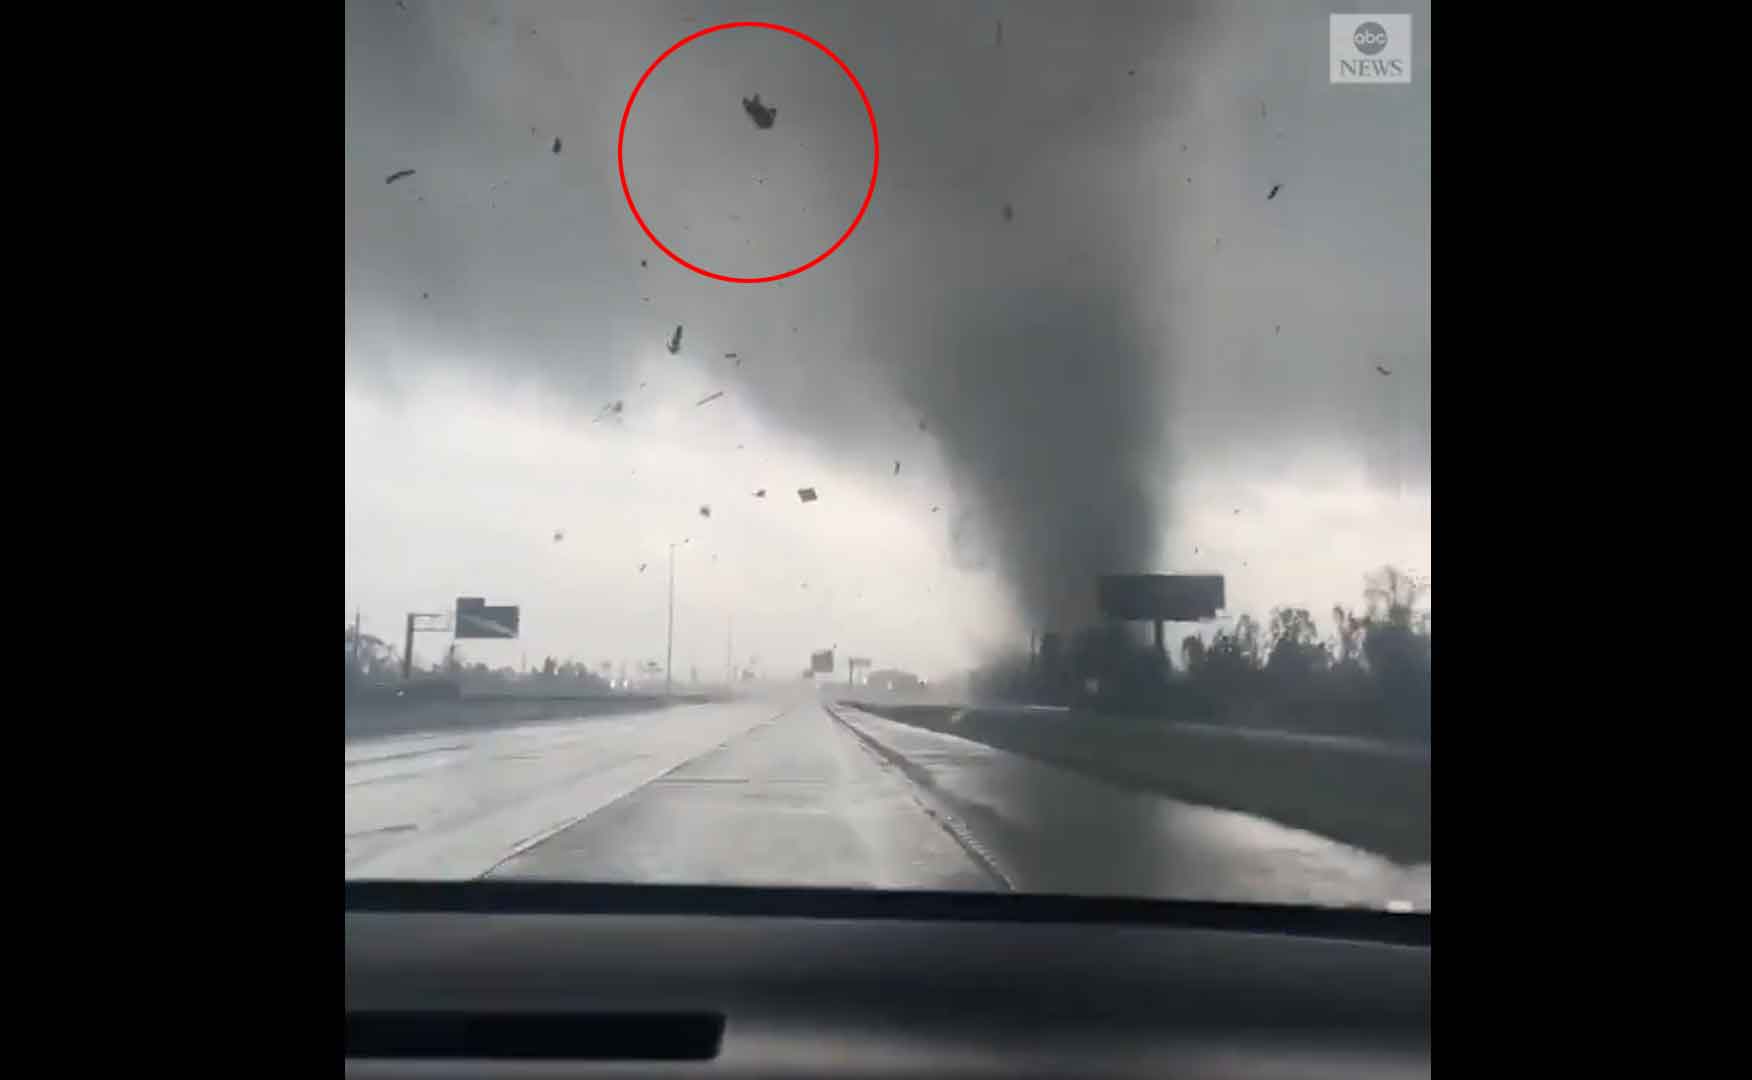 Tornado arremessa veículo a dezenas de metros pelo ar em rodovia; veja o vídeo. Foto: Reprodução Twitter